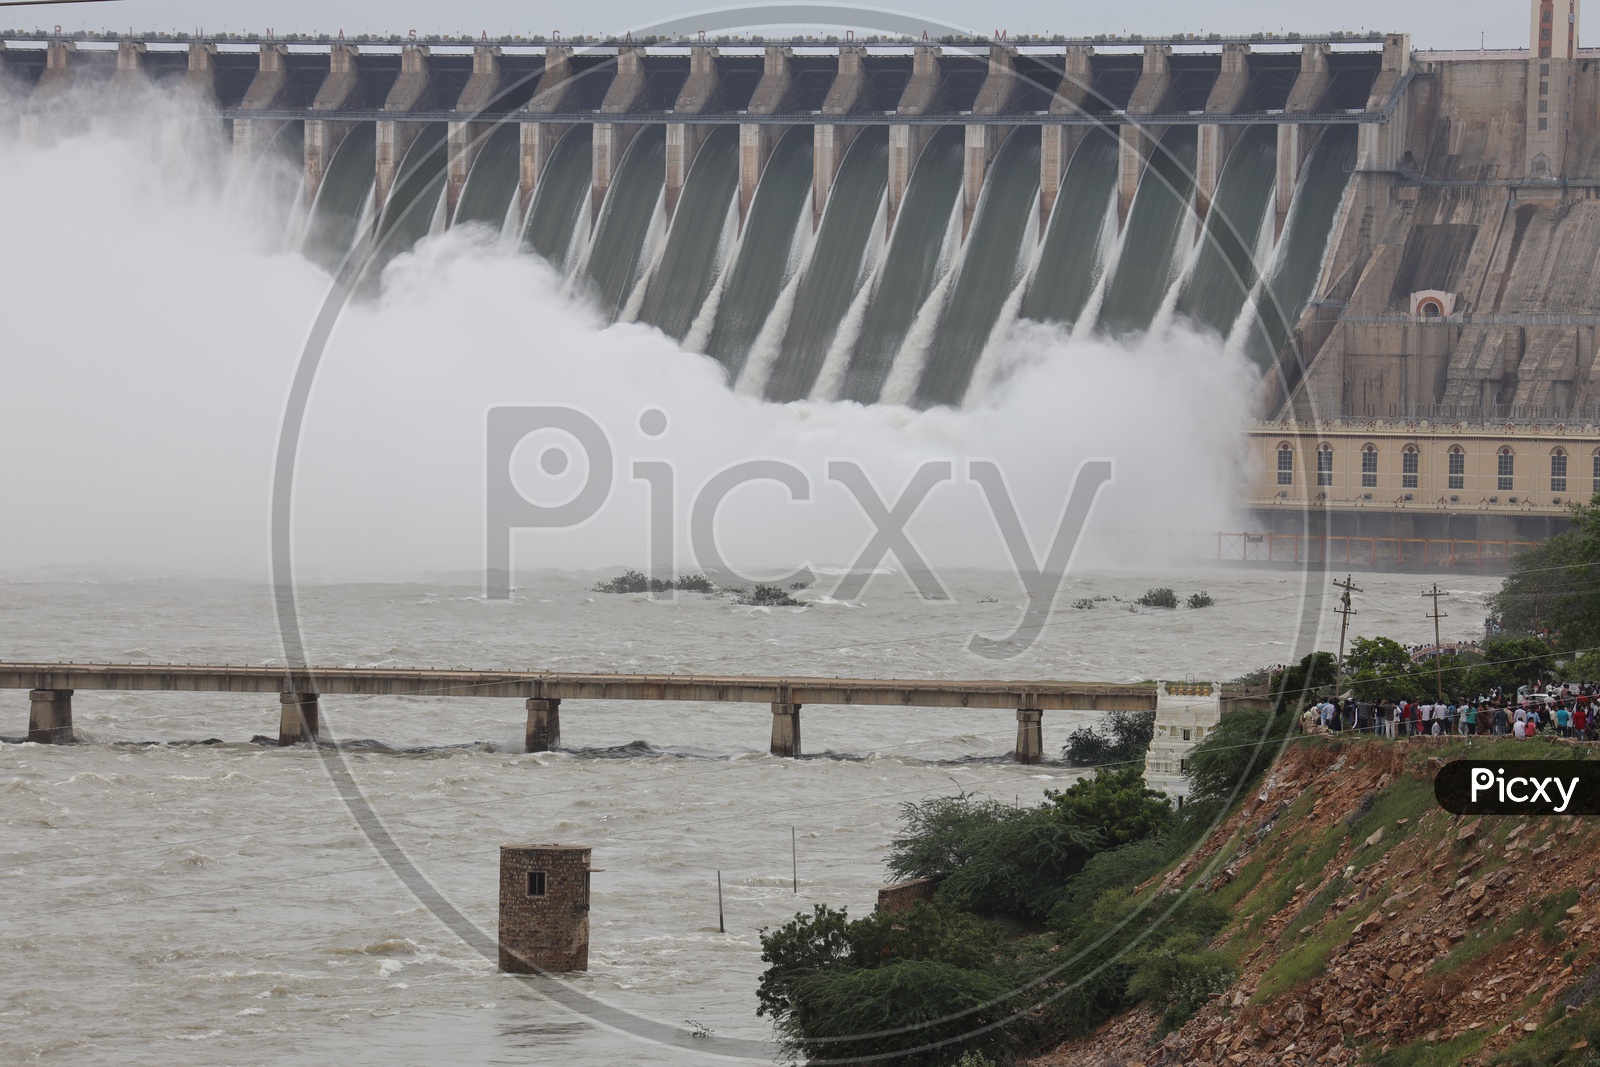 Nagarjuna  Sagar Dam Gates Opened water Gushing  View